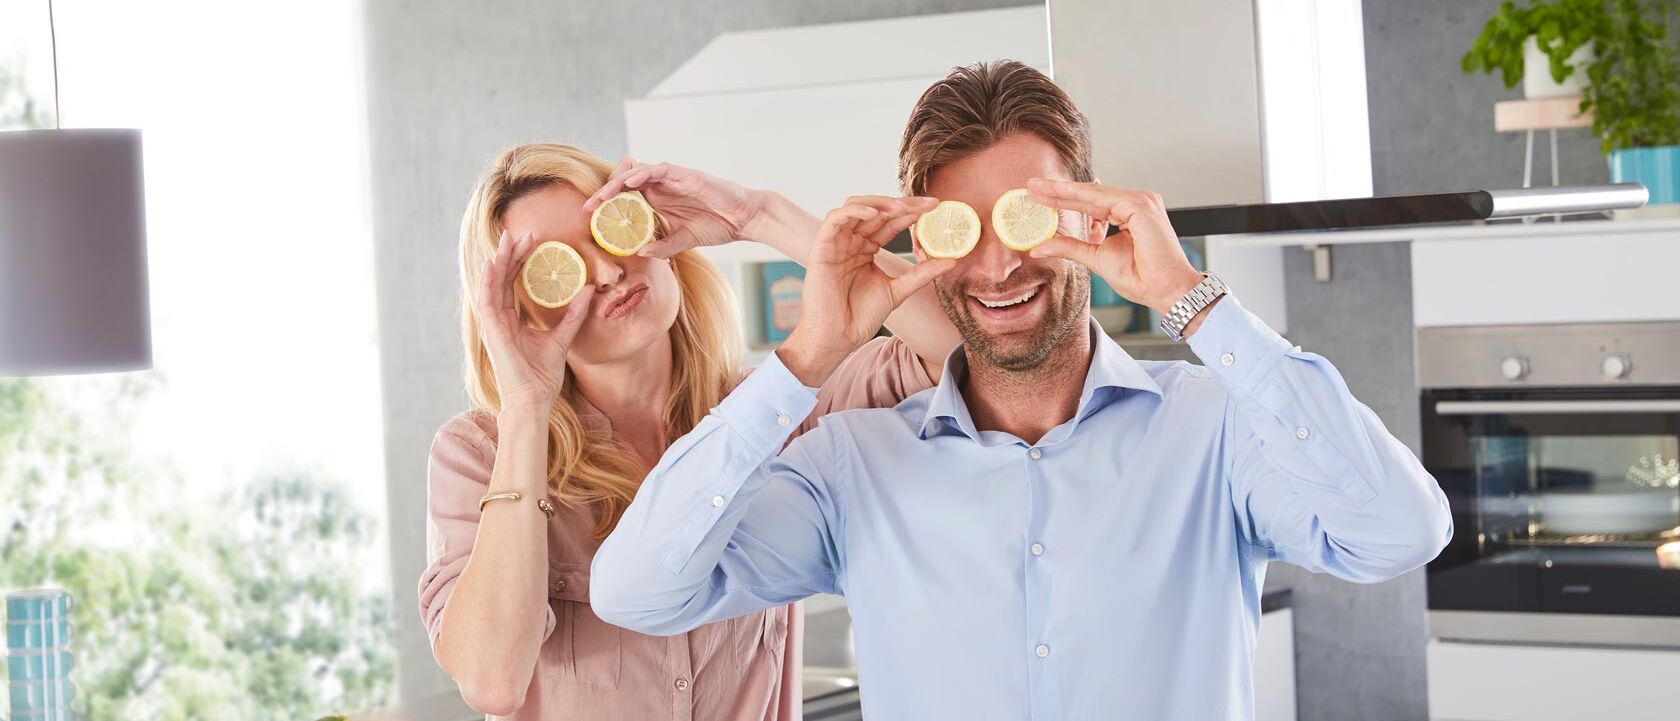 Mann und Frau lachen und halten Zitronen vor Augen